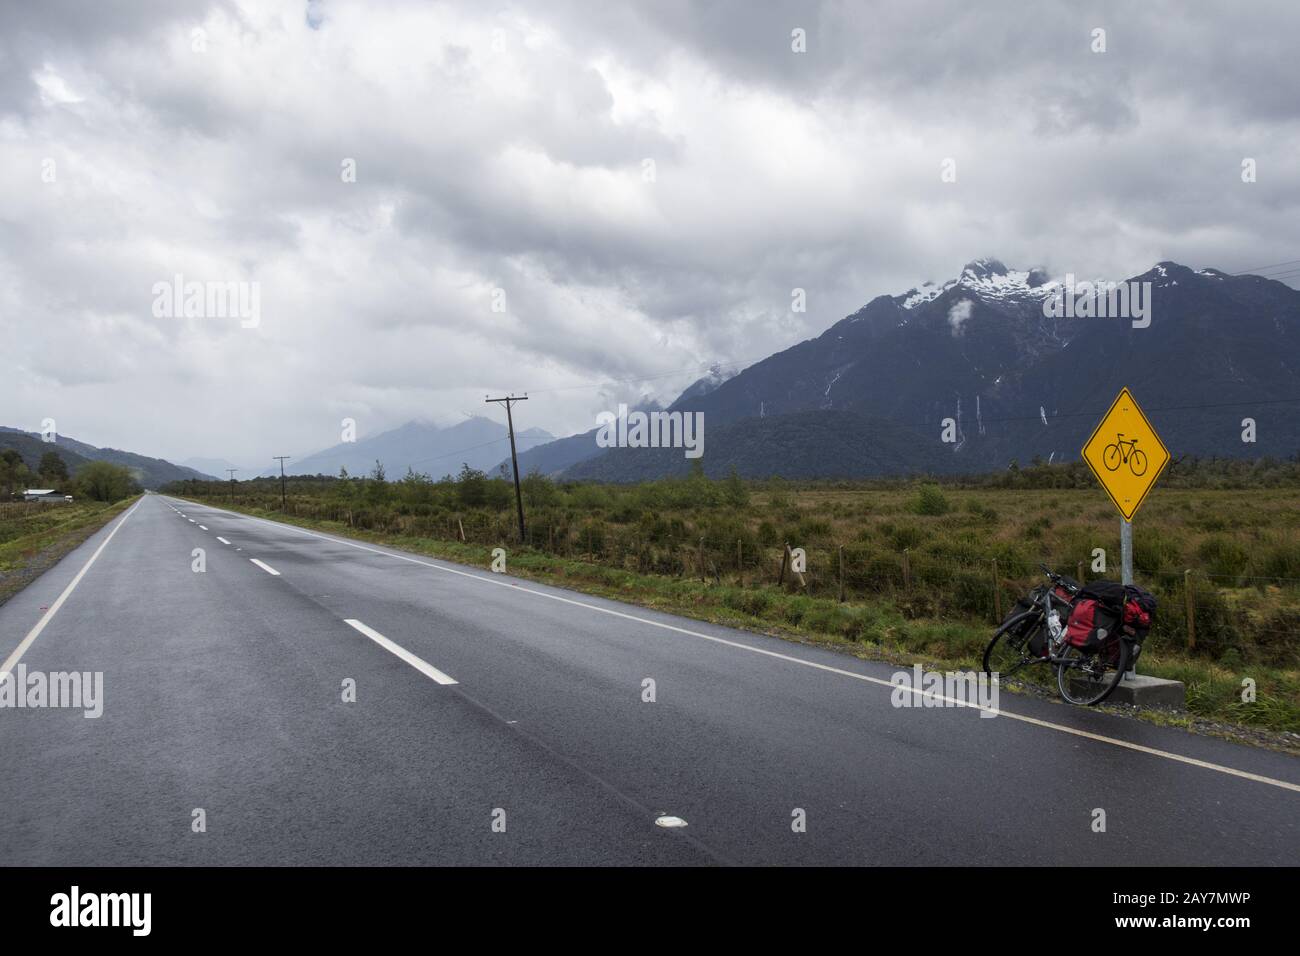 Carretera austral in Chile Stock Photo